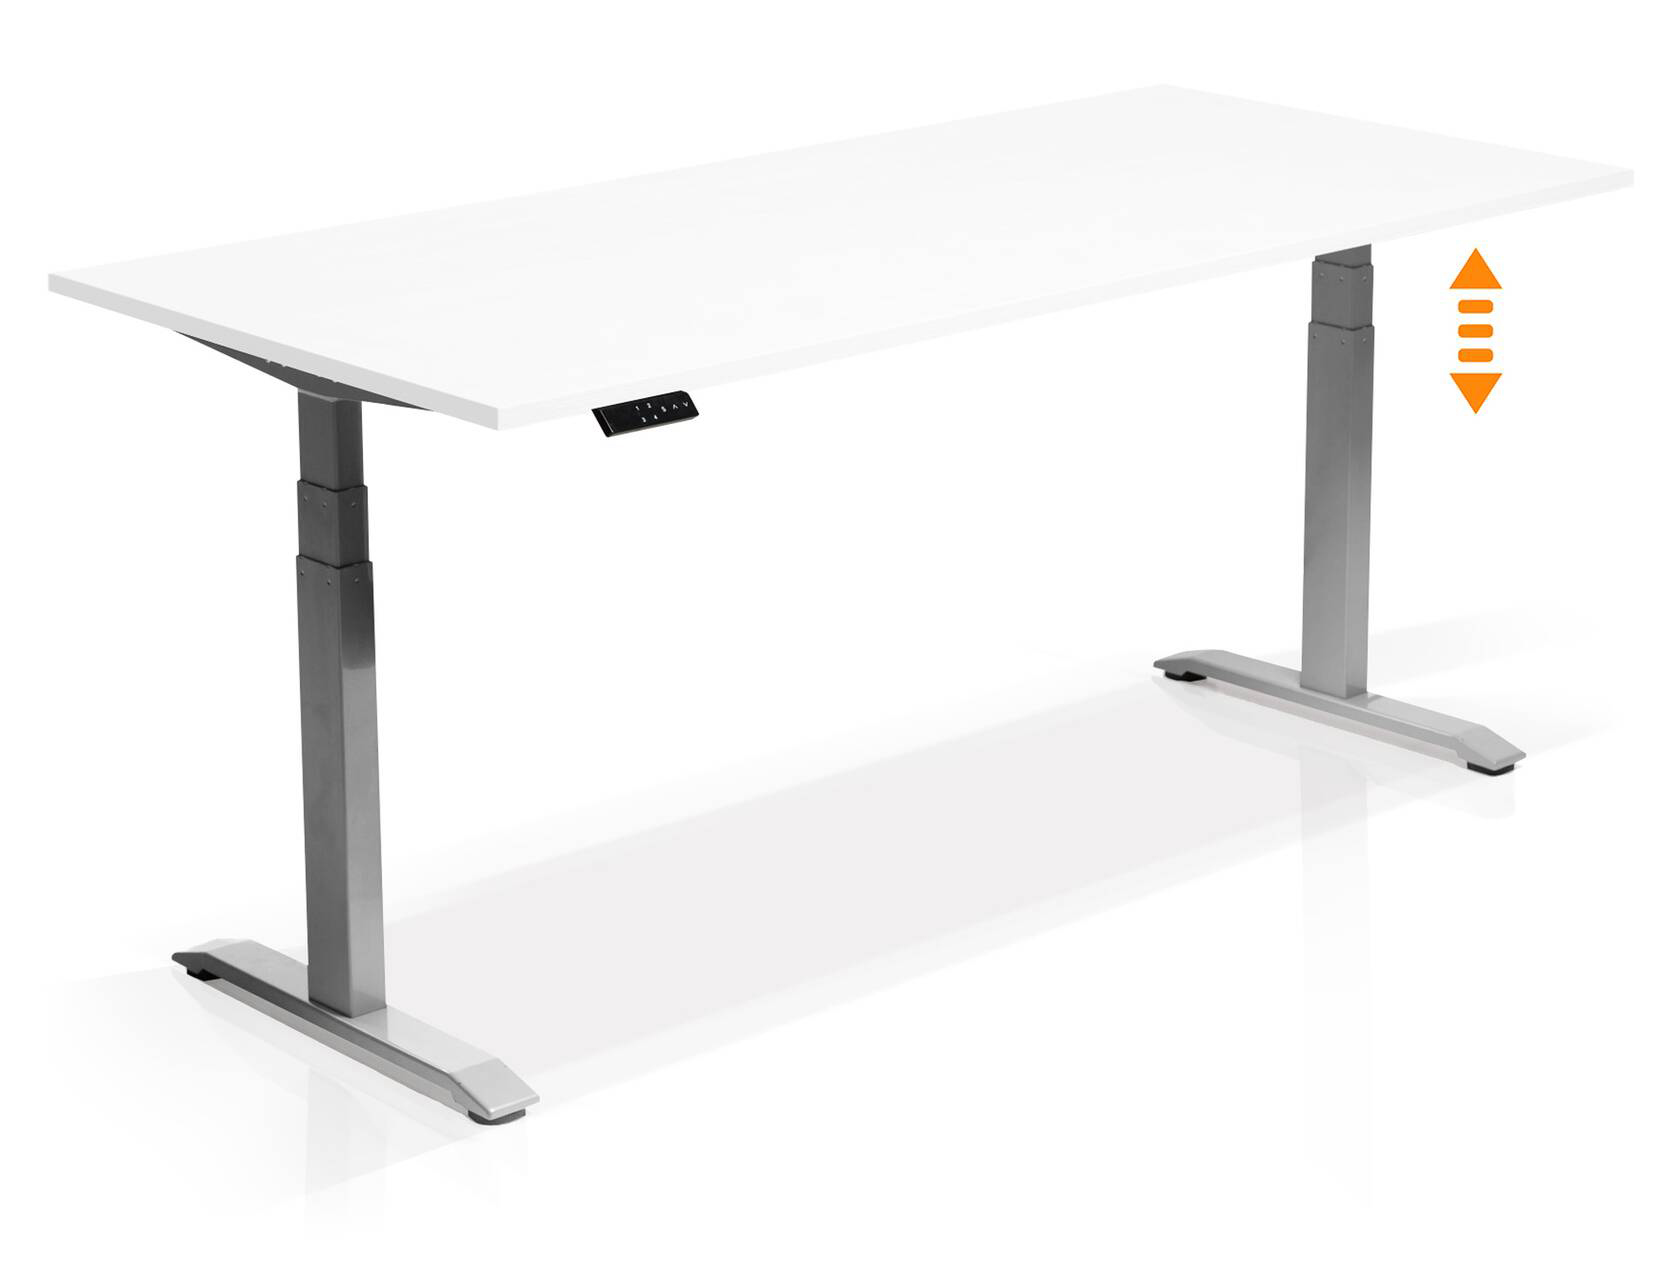 Hoehenverstellbarer Schreibtisch “WESI” von LHL in Modellvariante weisse Platte silberfarbenes Gestell bei LHL im Onlineshop kaufen - Seitenansicht